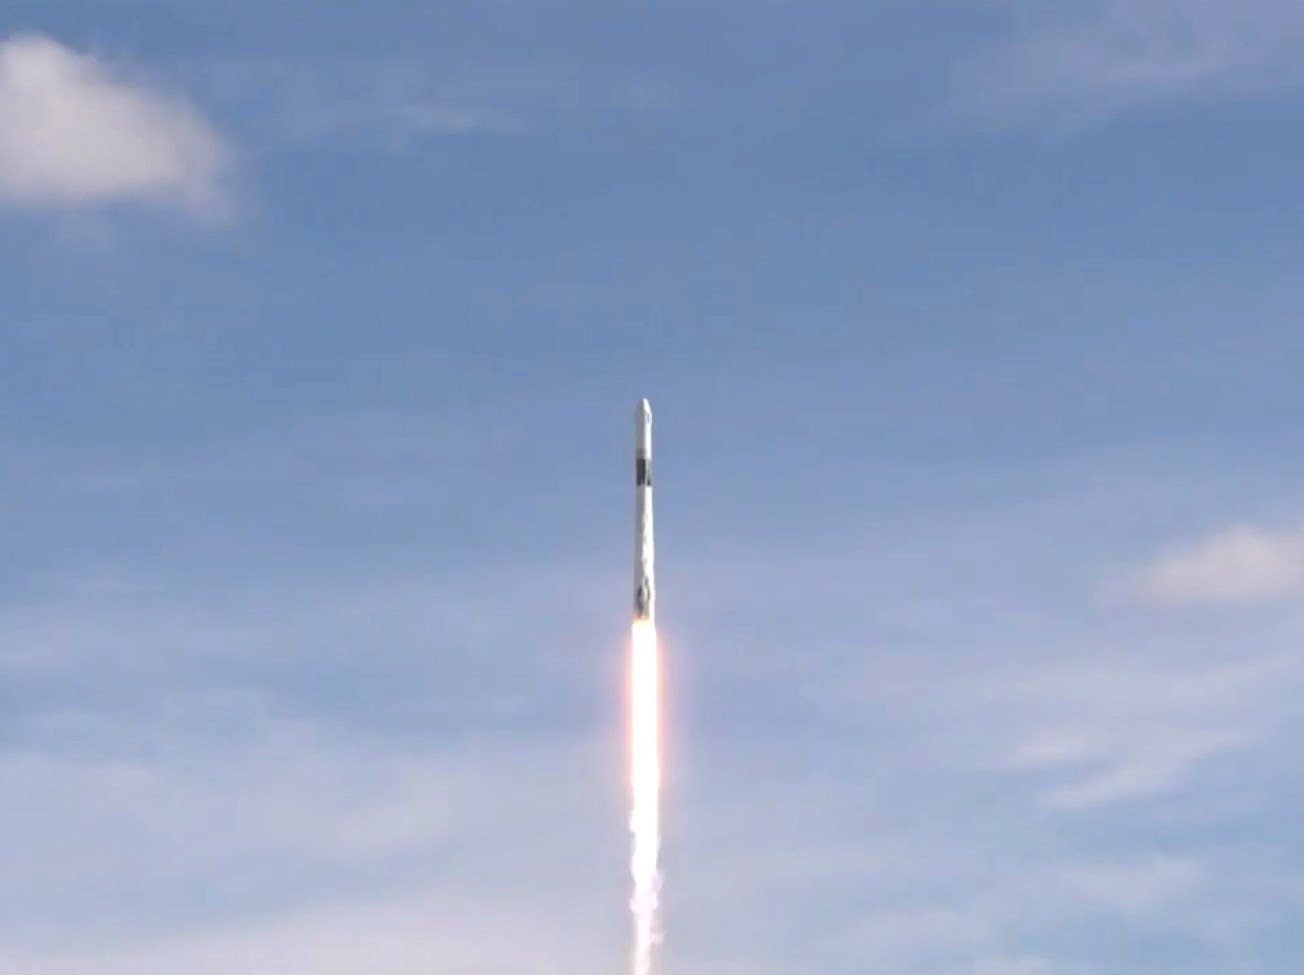 AME852. CABO CAÑAVERAL (ESTADOS UNIDOS), 25/07/2019.- Captura de vídeo cedida por la NASA donde aparece un SpaceX Falcon 9 mientras despega este jueves desde el Complejo de Lanzamiento Espacial 40 en la Estación de la Fuerza Aérea de Cabo Cañaveral, en Florida (EE.UU.). La compañía privada SpaceX envío este jueves desde Cabo Cañaveral la cápsula Dragon con más de 5.000 libras (más de 2.200 kilos) de carga y suministros a la Estación Espacial Internacional (EEI). La que es la décimo octava misión para el abastecimiento de la EEI desde 2016, cuando la NASA y la firma liderada por Elon Musk suscribieron un contrato para ese fin y que está vigente hasta 2024, logró además recuperar la primera etapa del cohete Falcon 9. EFE/NASA/ SOLO USO EDITORIAL/ NO VENTAS